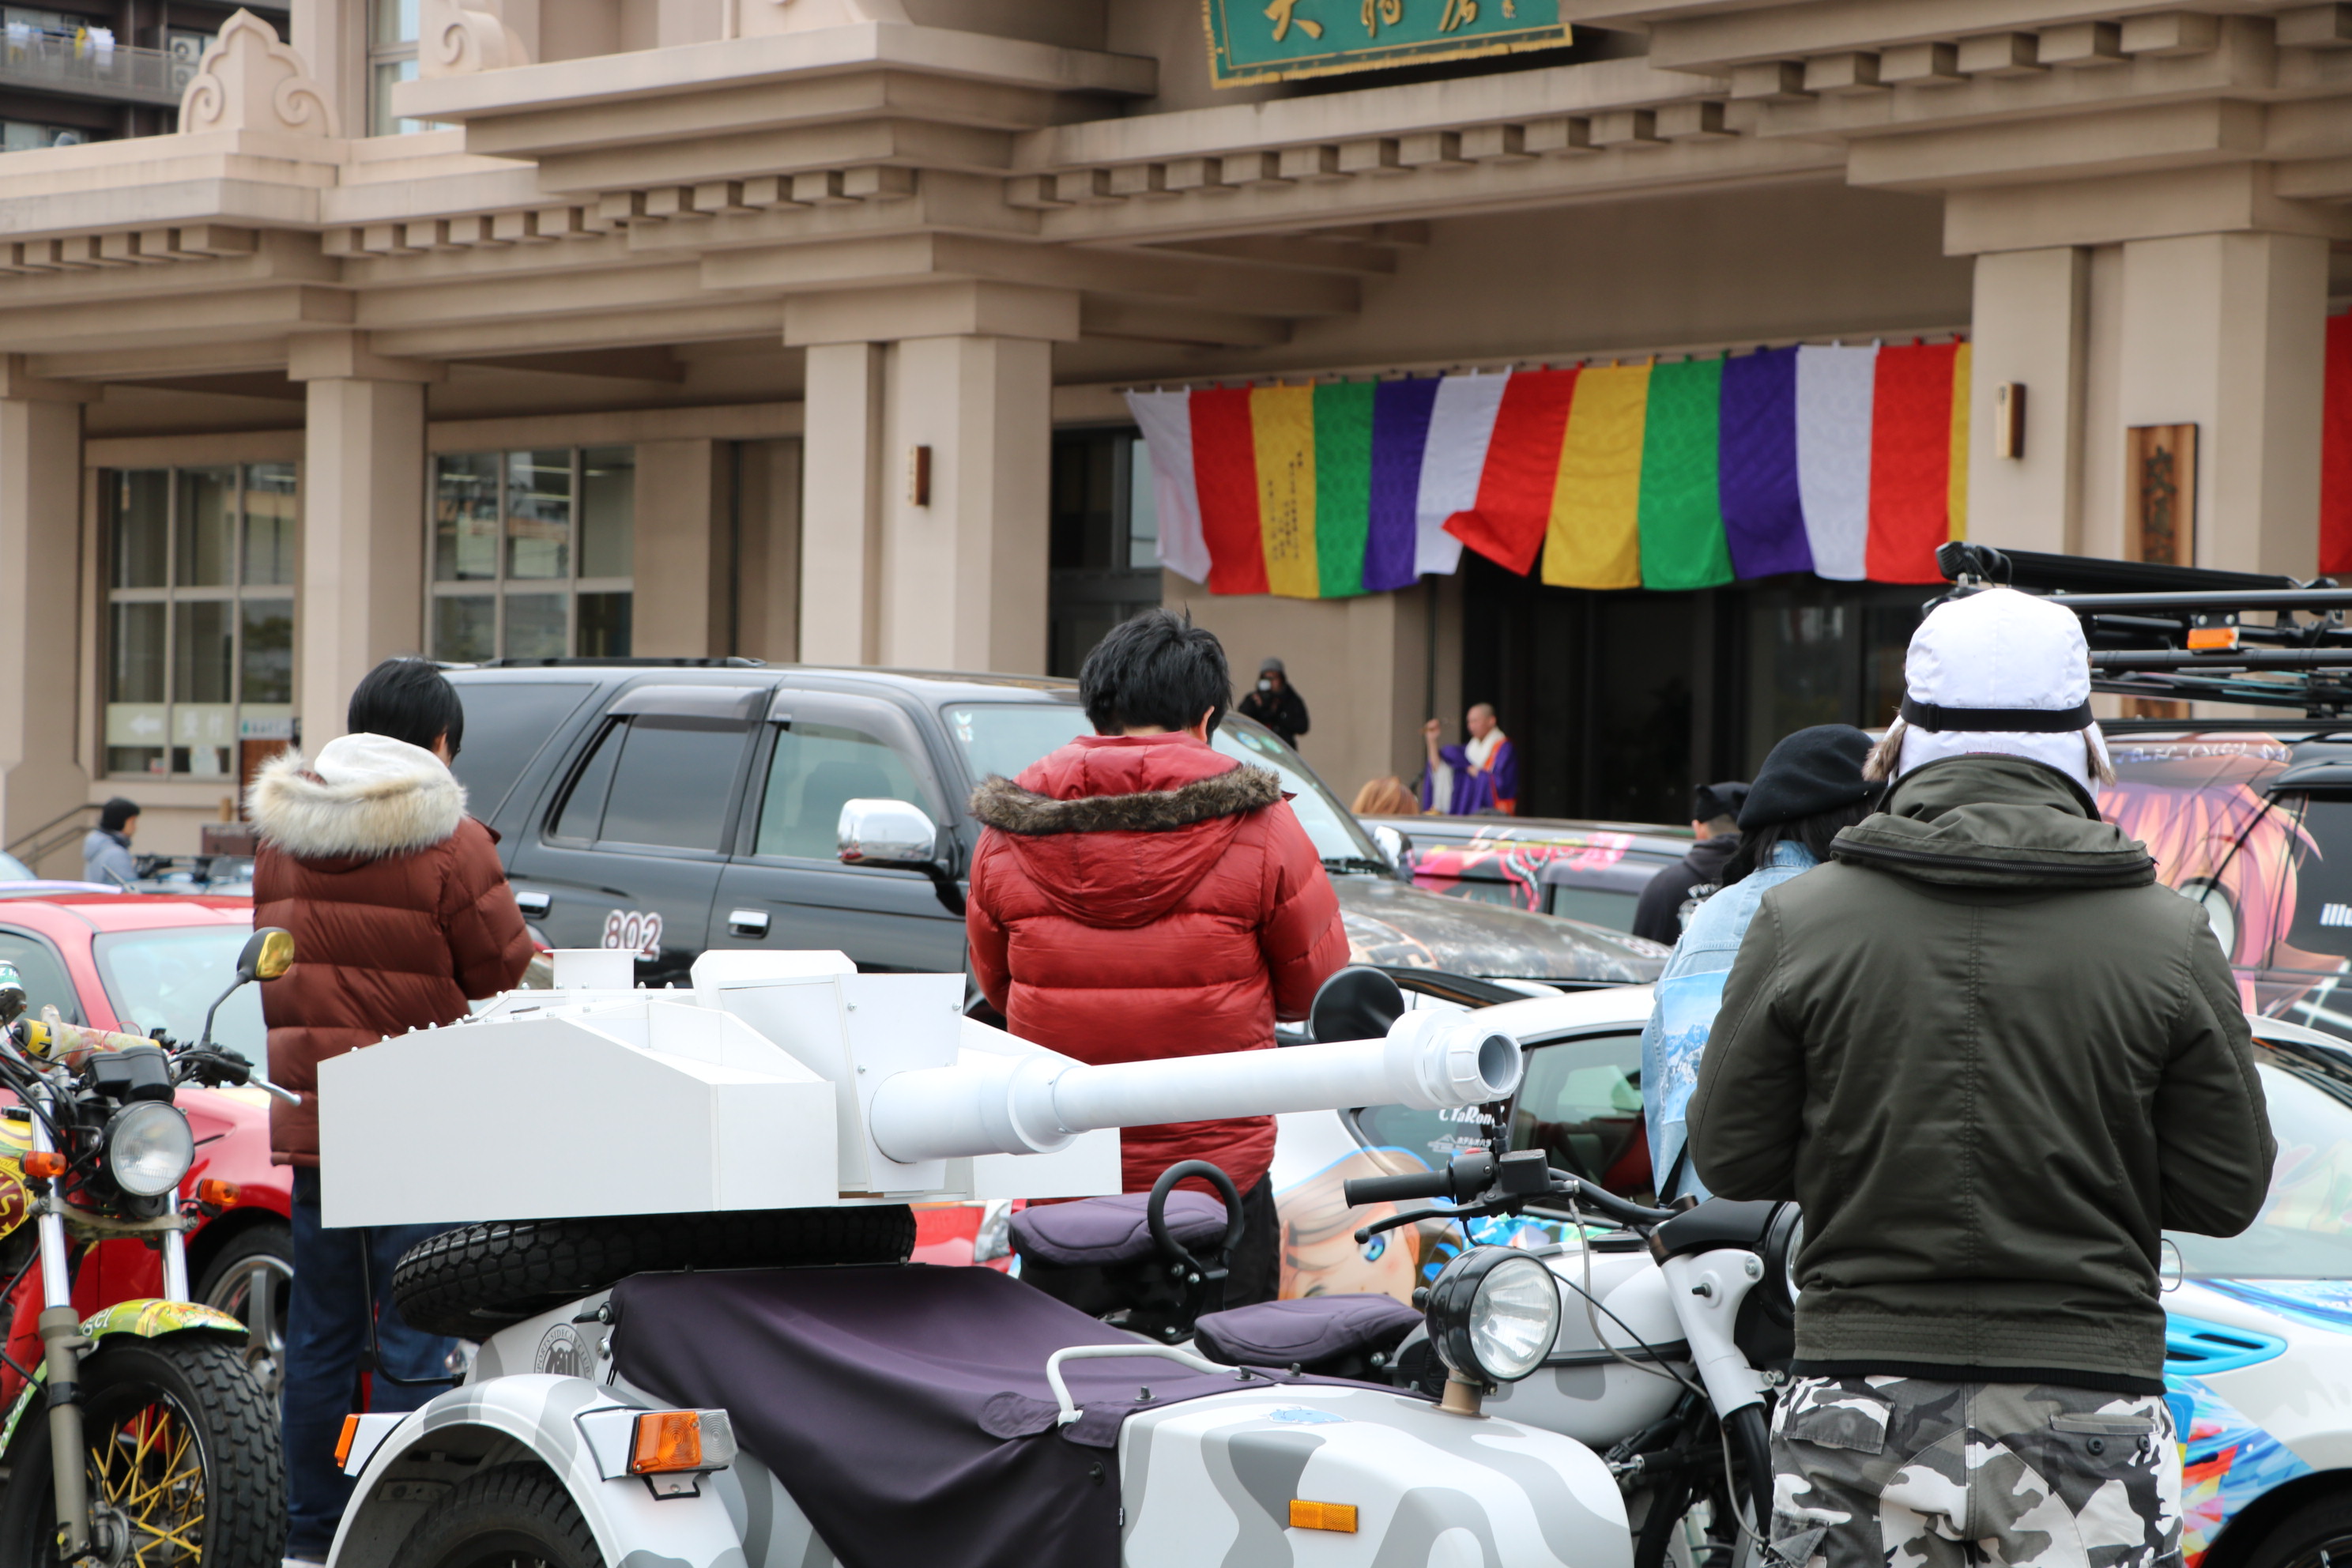 史上初 痛車 痛バイク交通安全祈願を開催 川崎大師に約100台の痛車が集結 Moby モビー